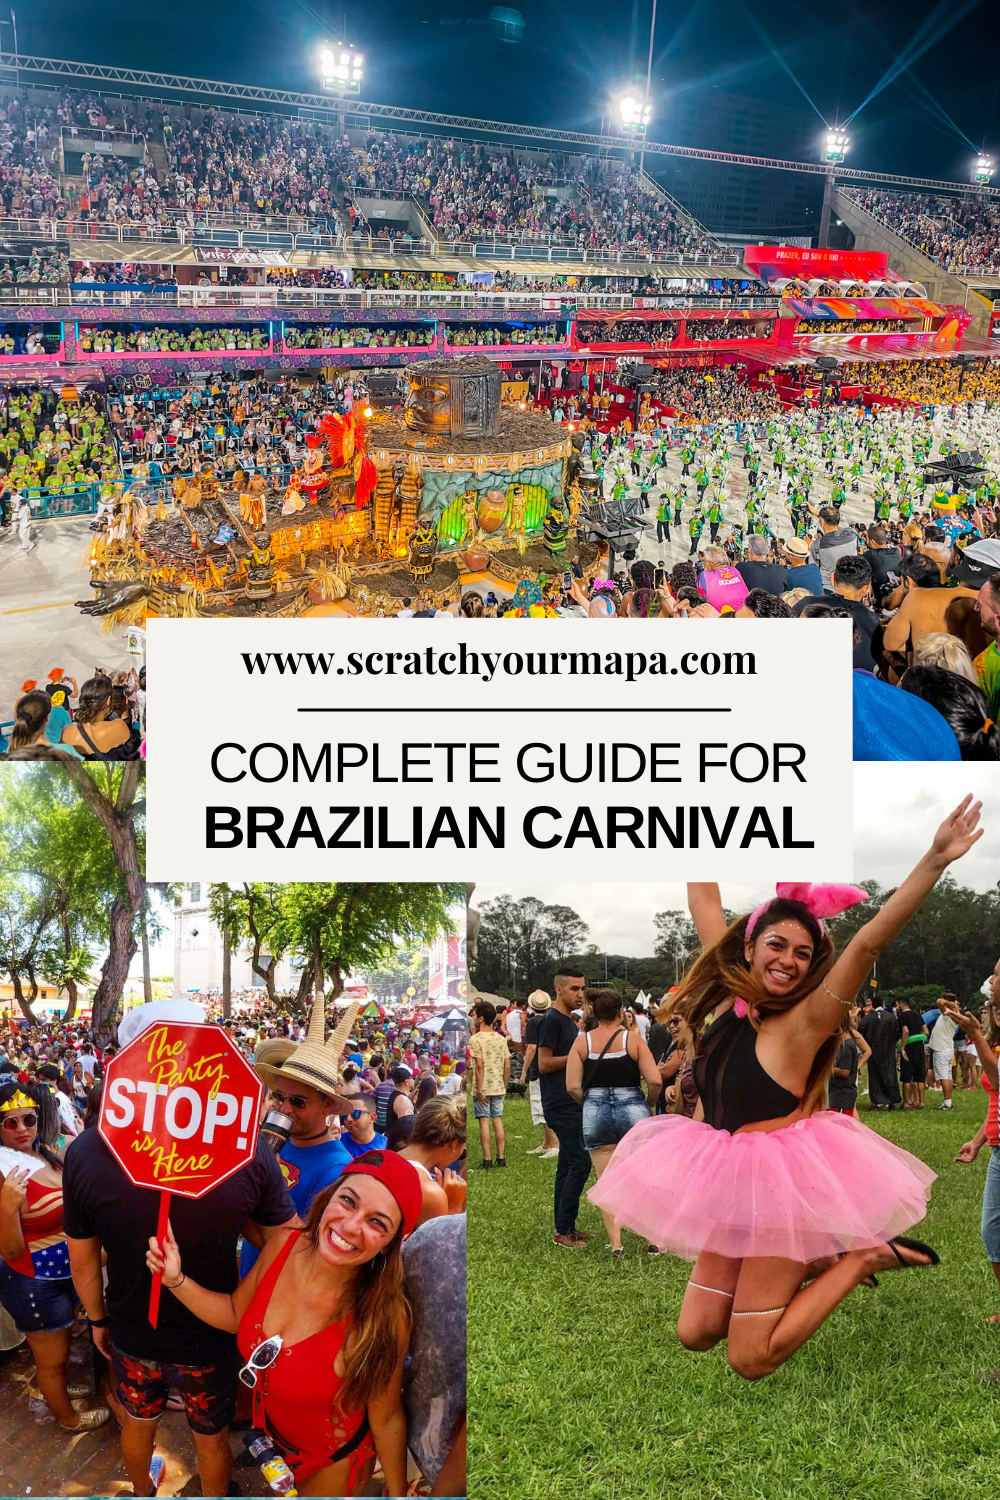 the carnival in Brazil pin